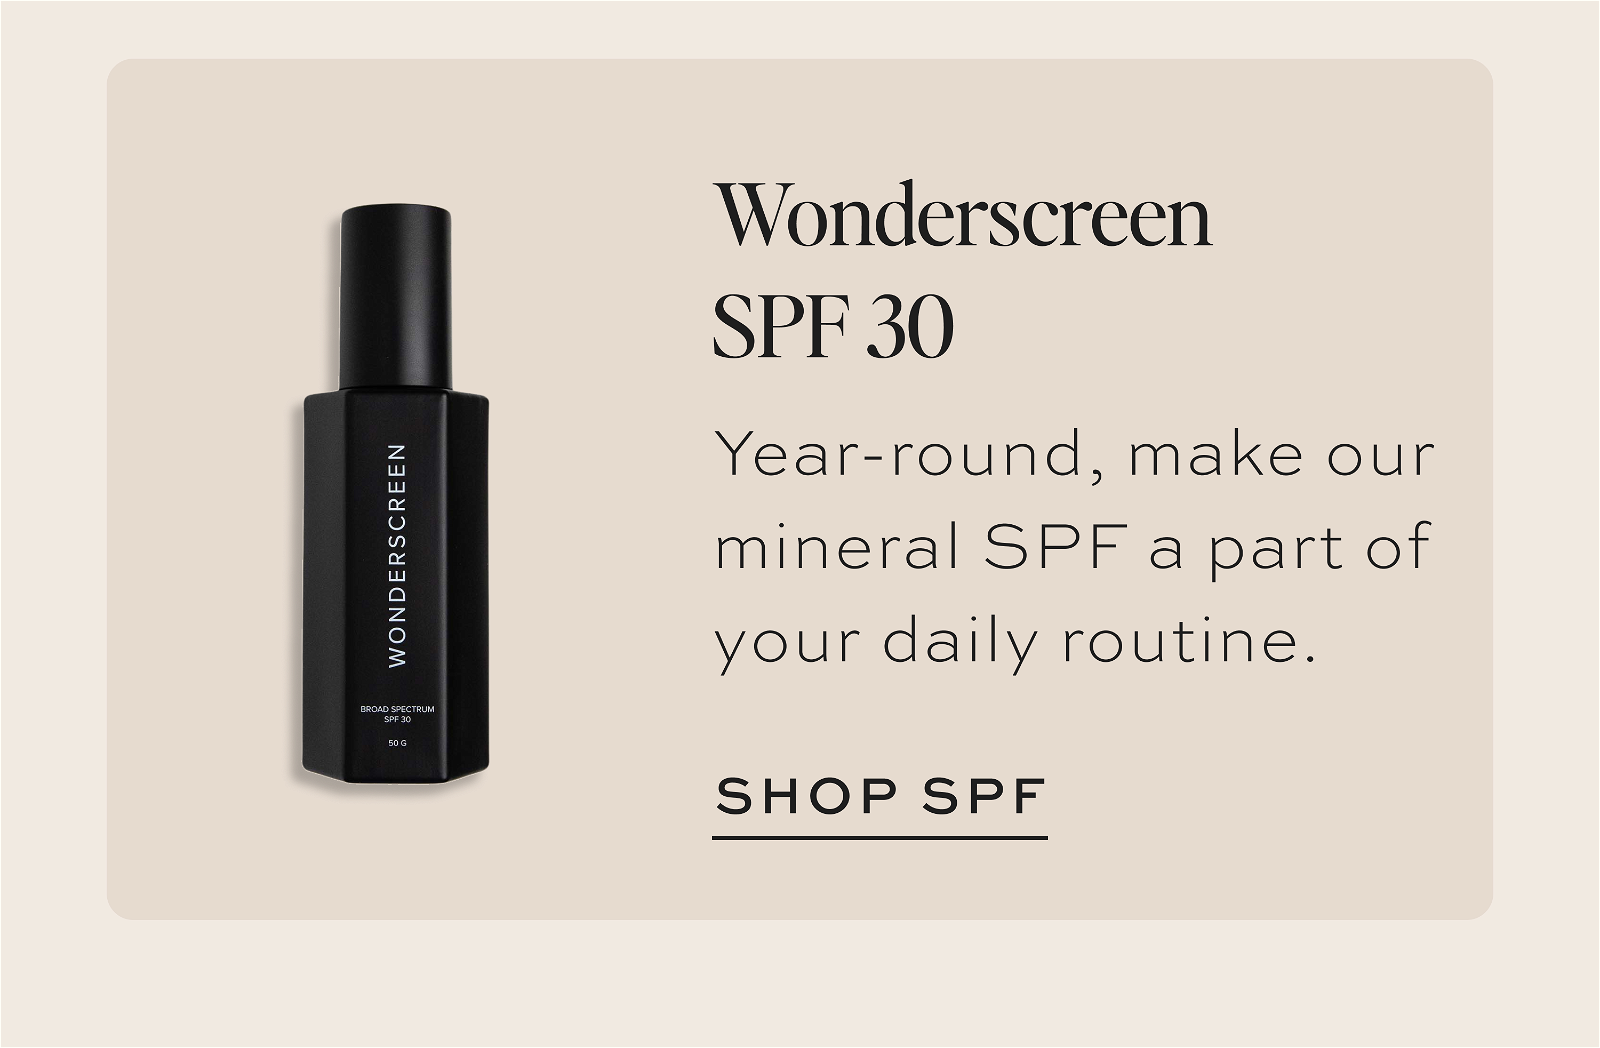 Wonderscreen SPF 30